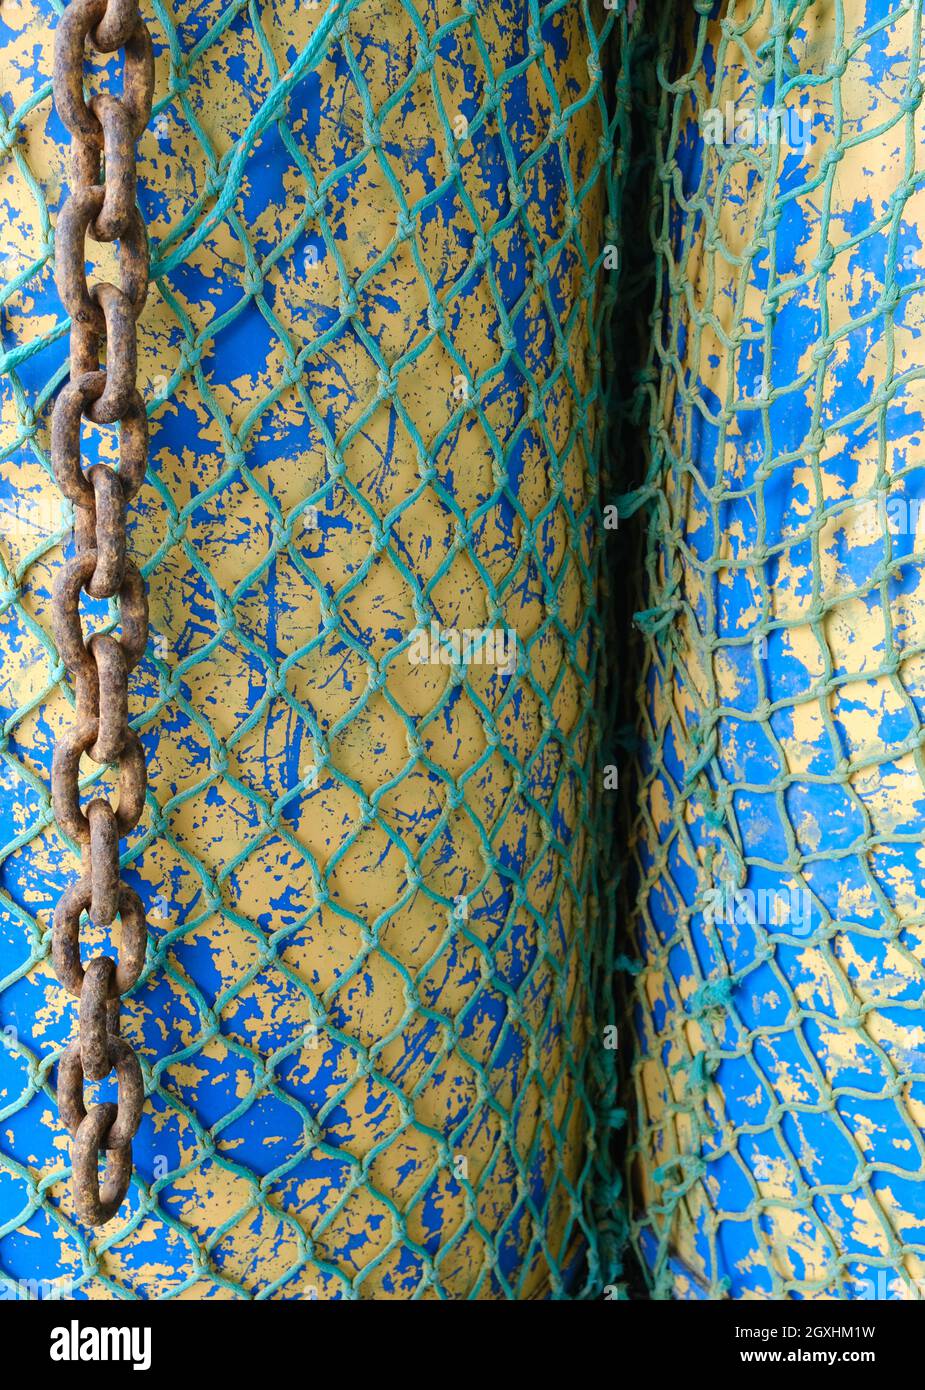 resumen de redes de pescadores envueltas alrededor de dos tambores de aceite Foto de stock